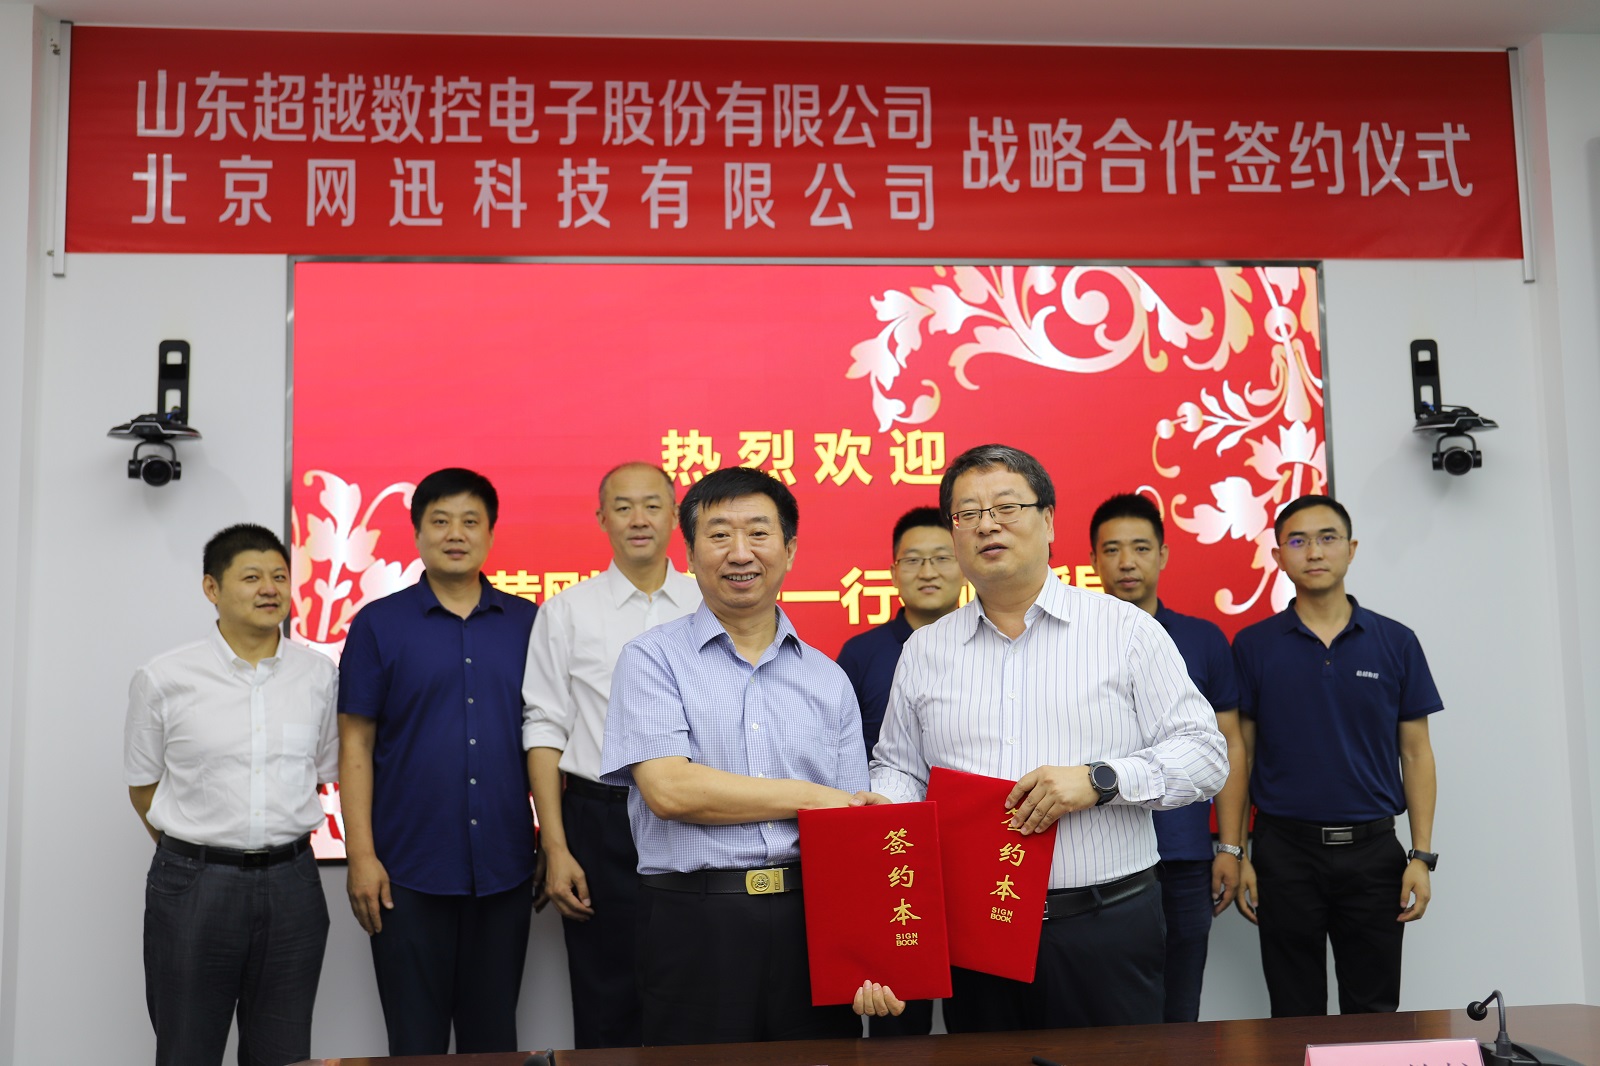 北京土亞特網絡科技有限公司與山東超越數控電子股份有限公司簽署戰略合作協議